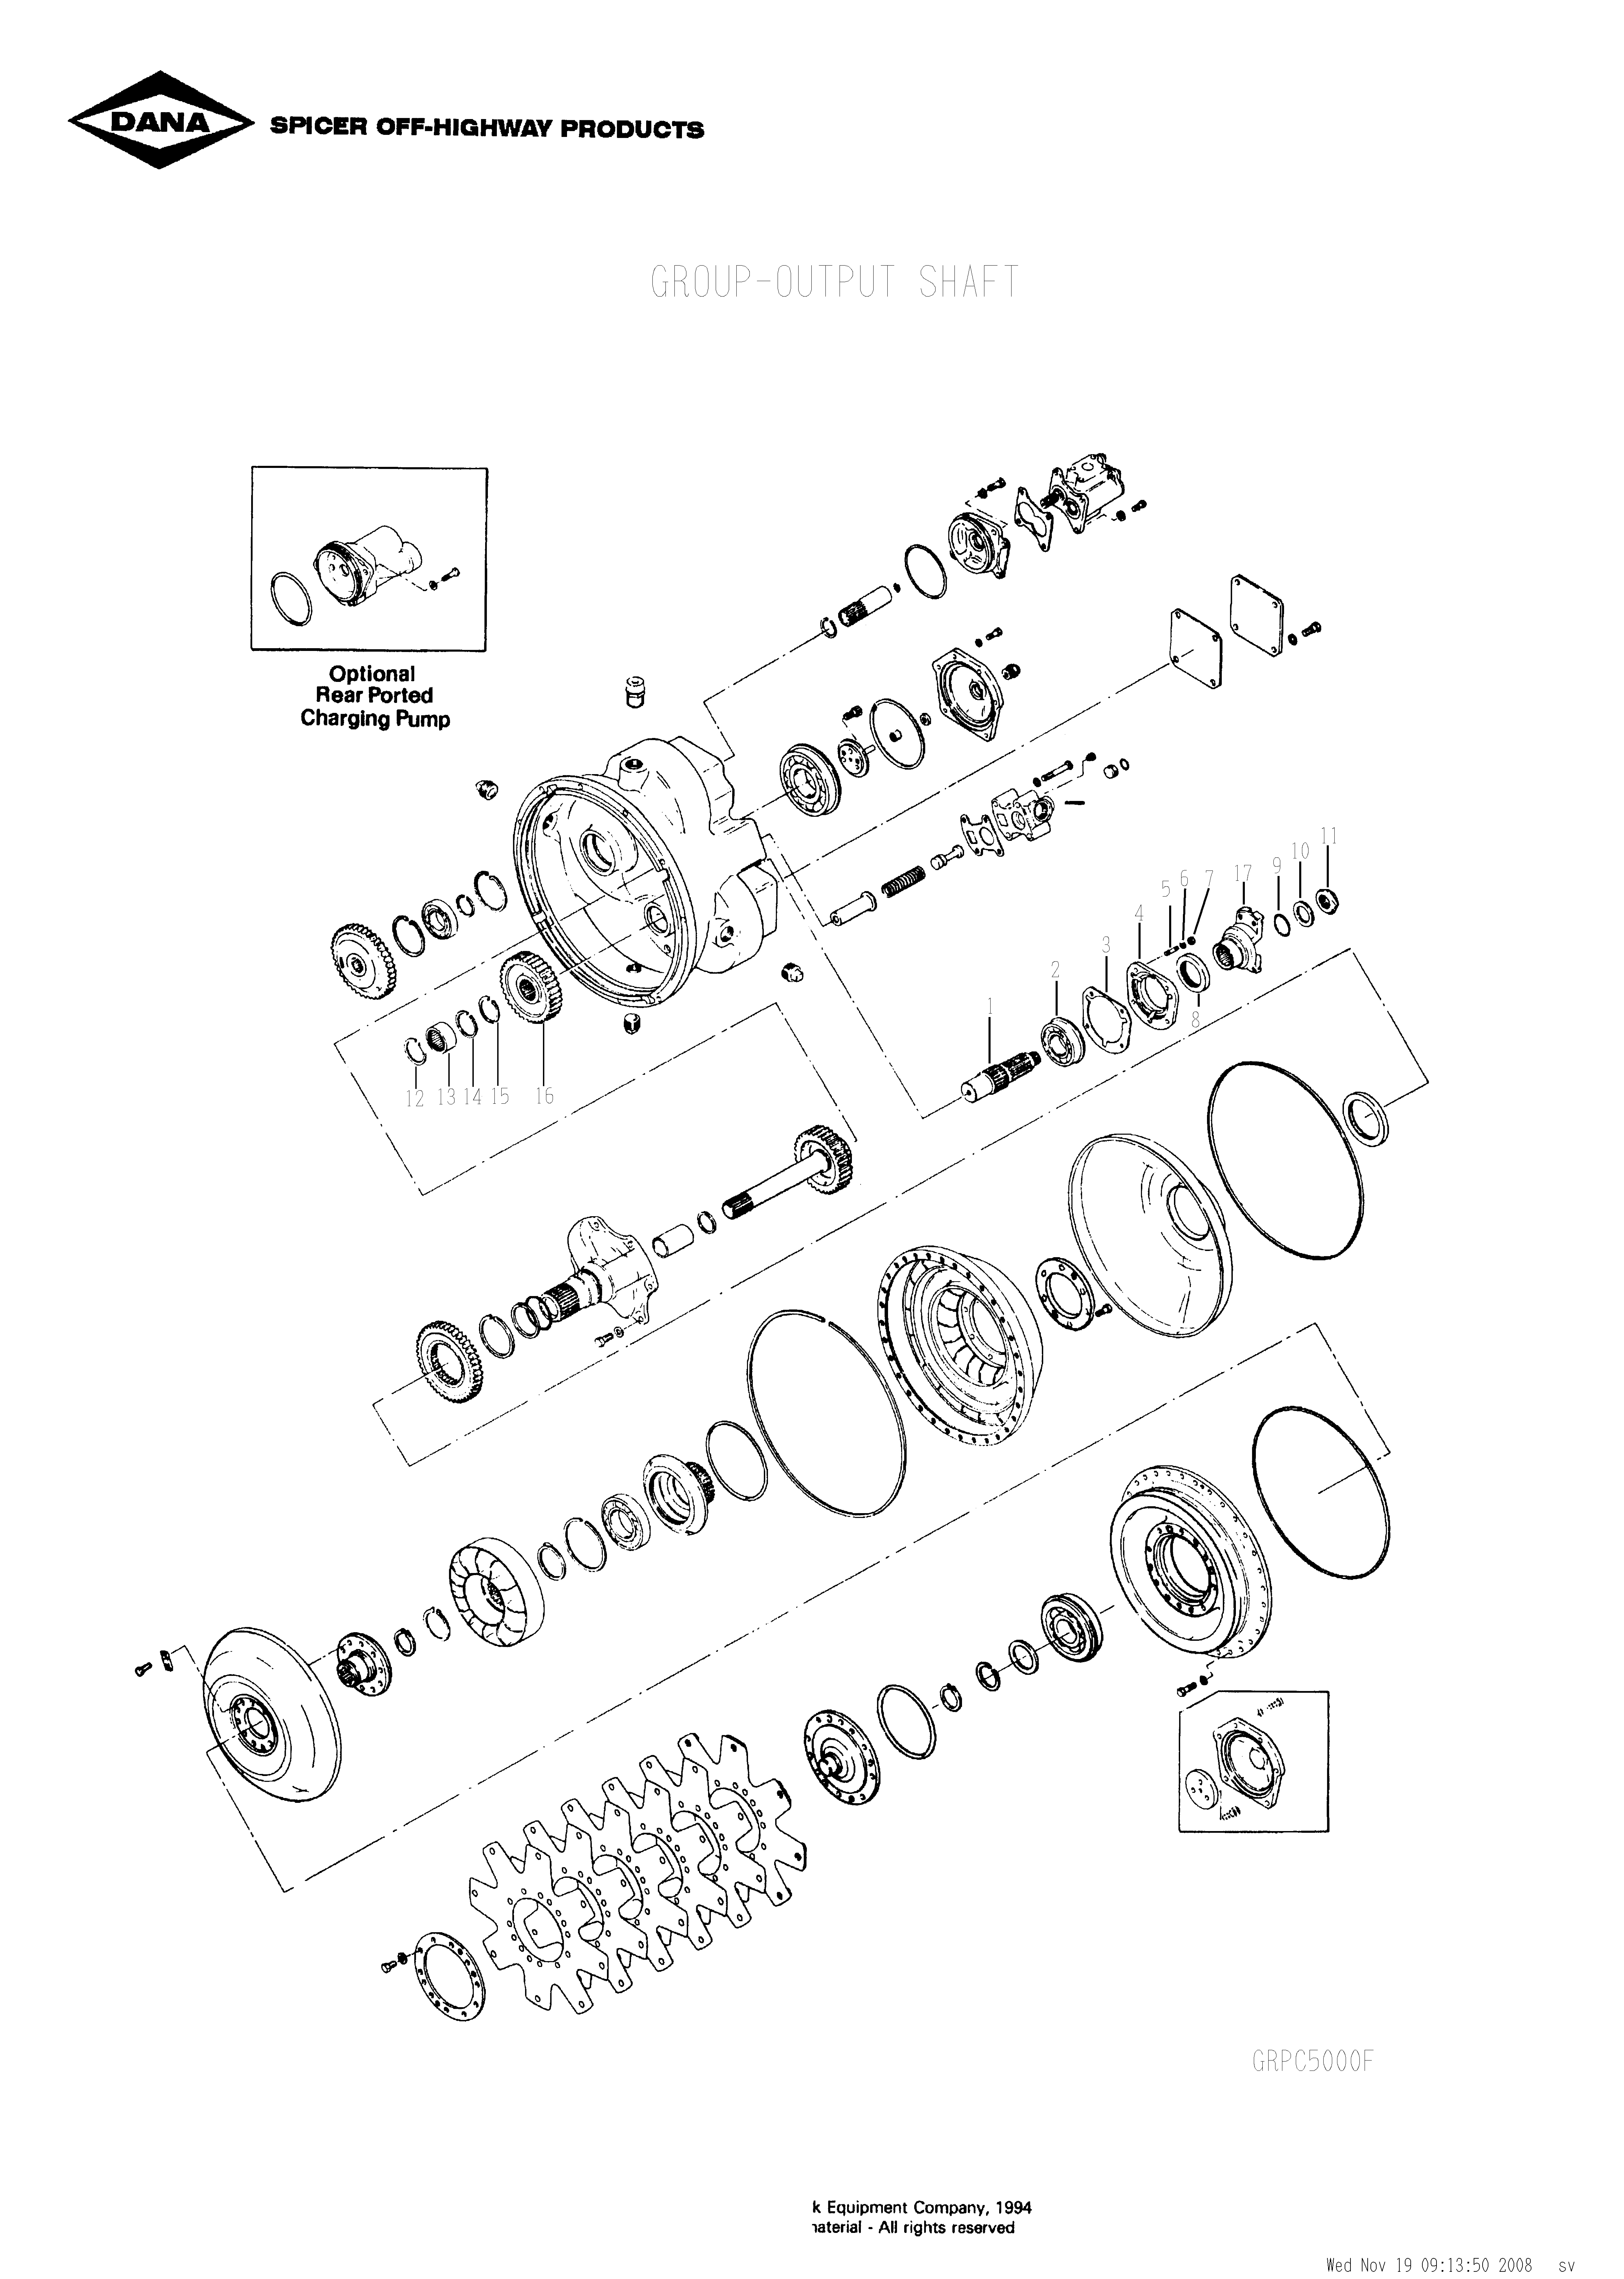 drawing for SCHOEMA, SCHOETTLER MASCHINENFABRIK K24.000101 - OIL SEAL (figure 3)